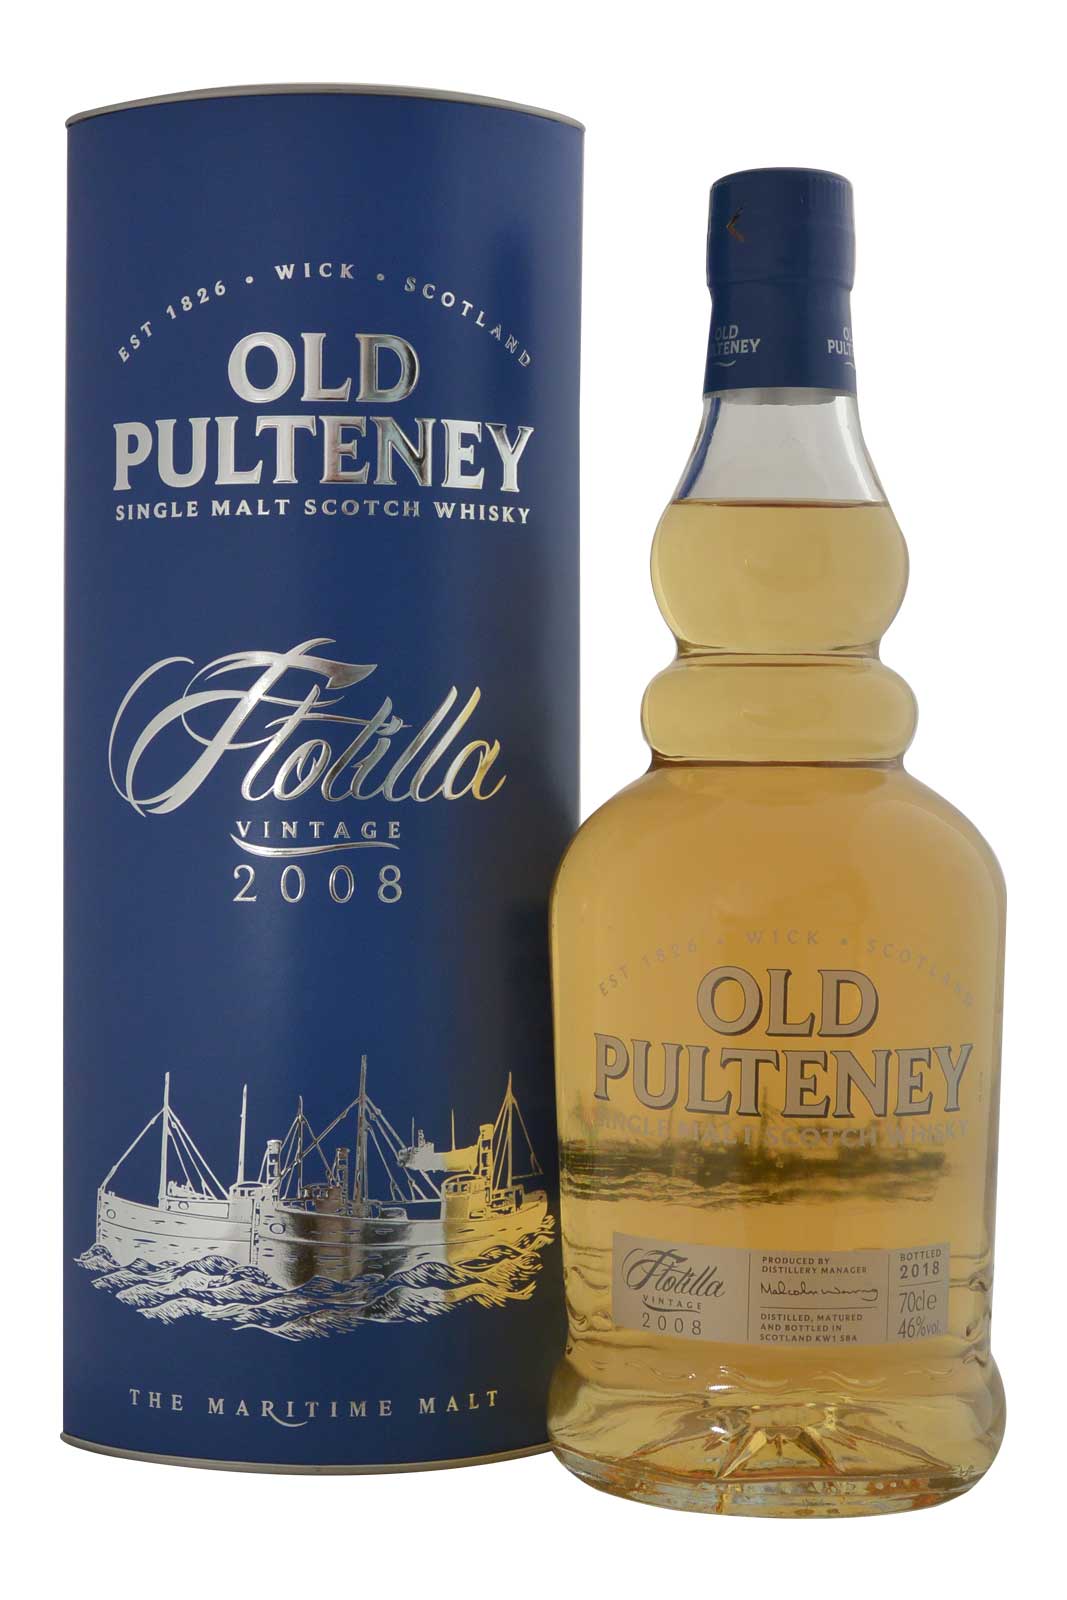 Old Pulteney Flotilla 2008